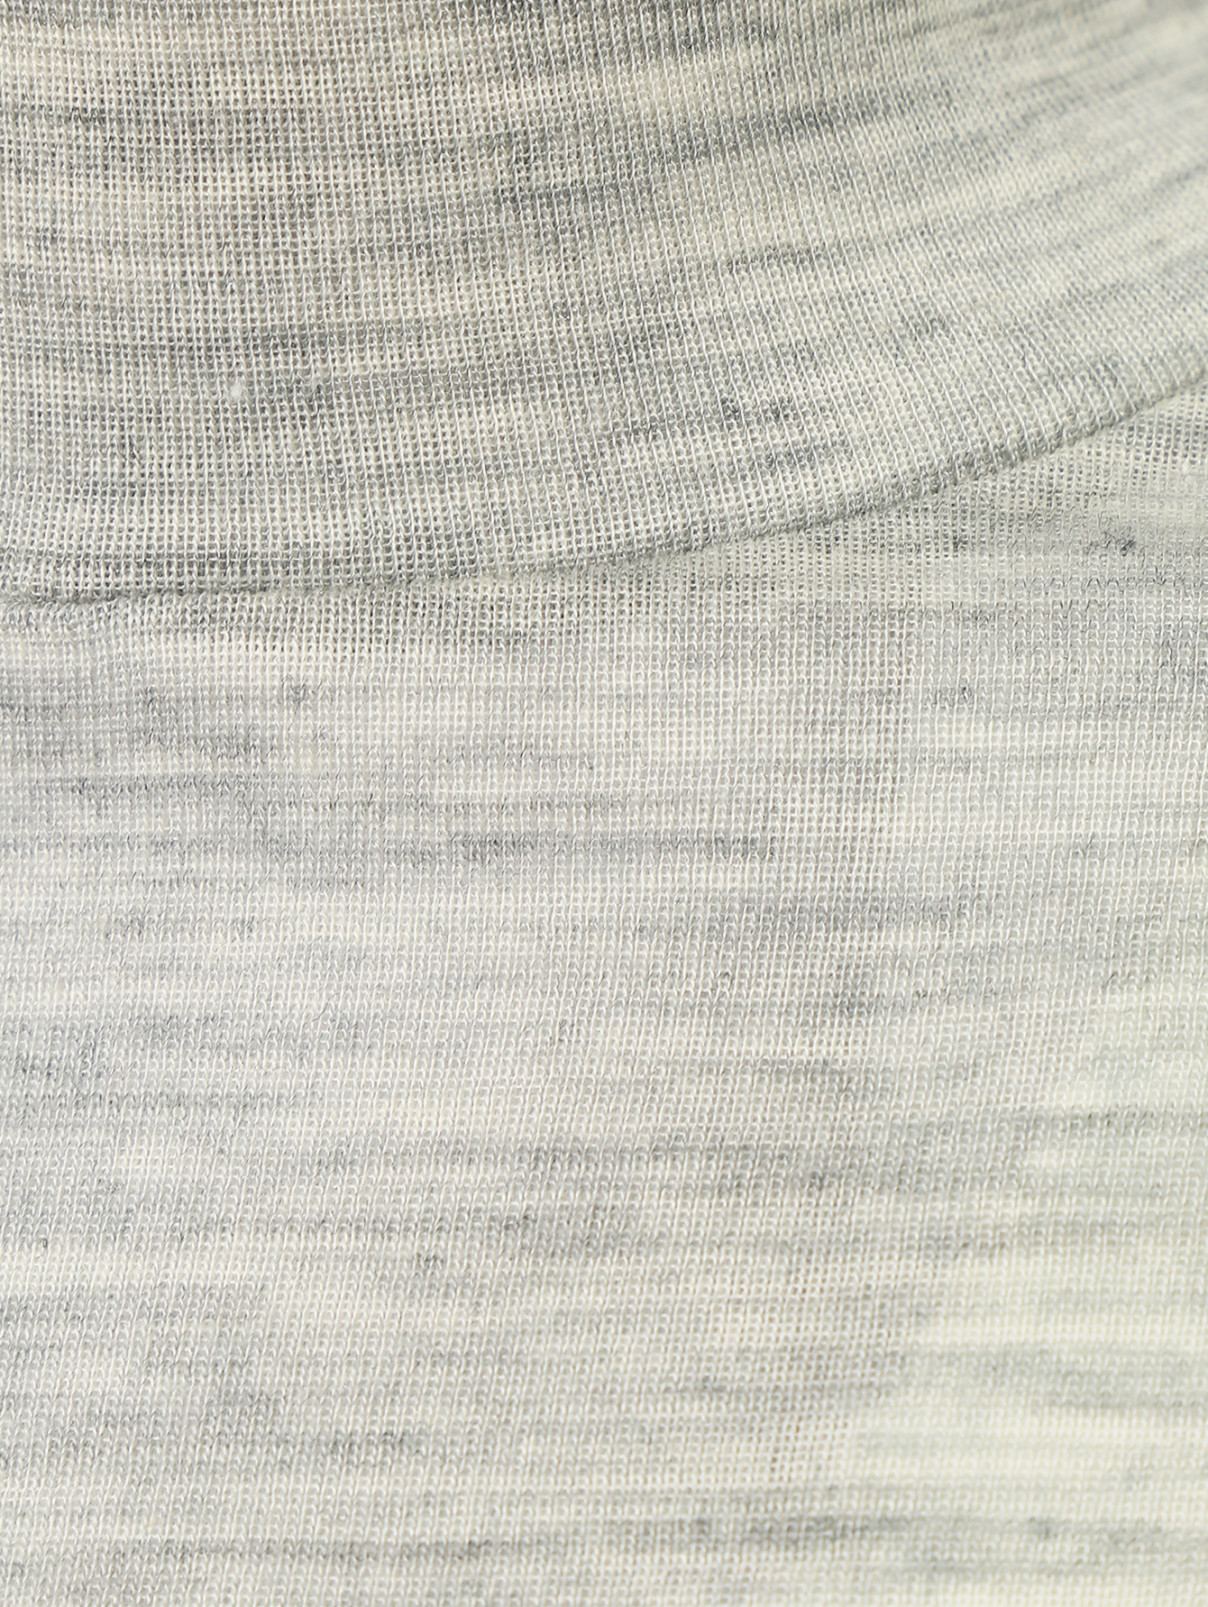 Водолазка трикотажная из шерсти мериноса Norveg  –  Деталь1  – Цвет:  Серый